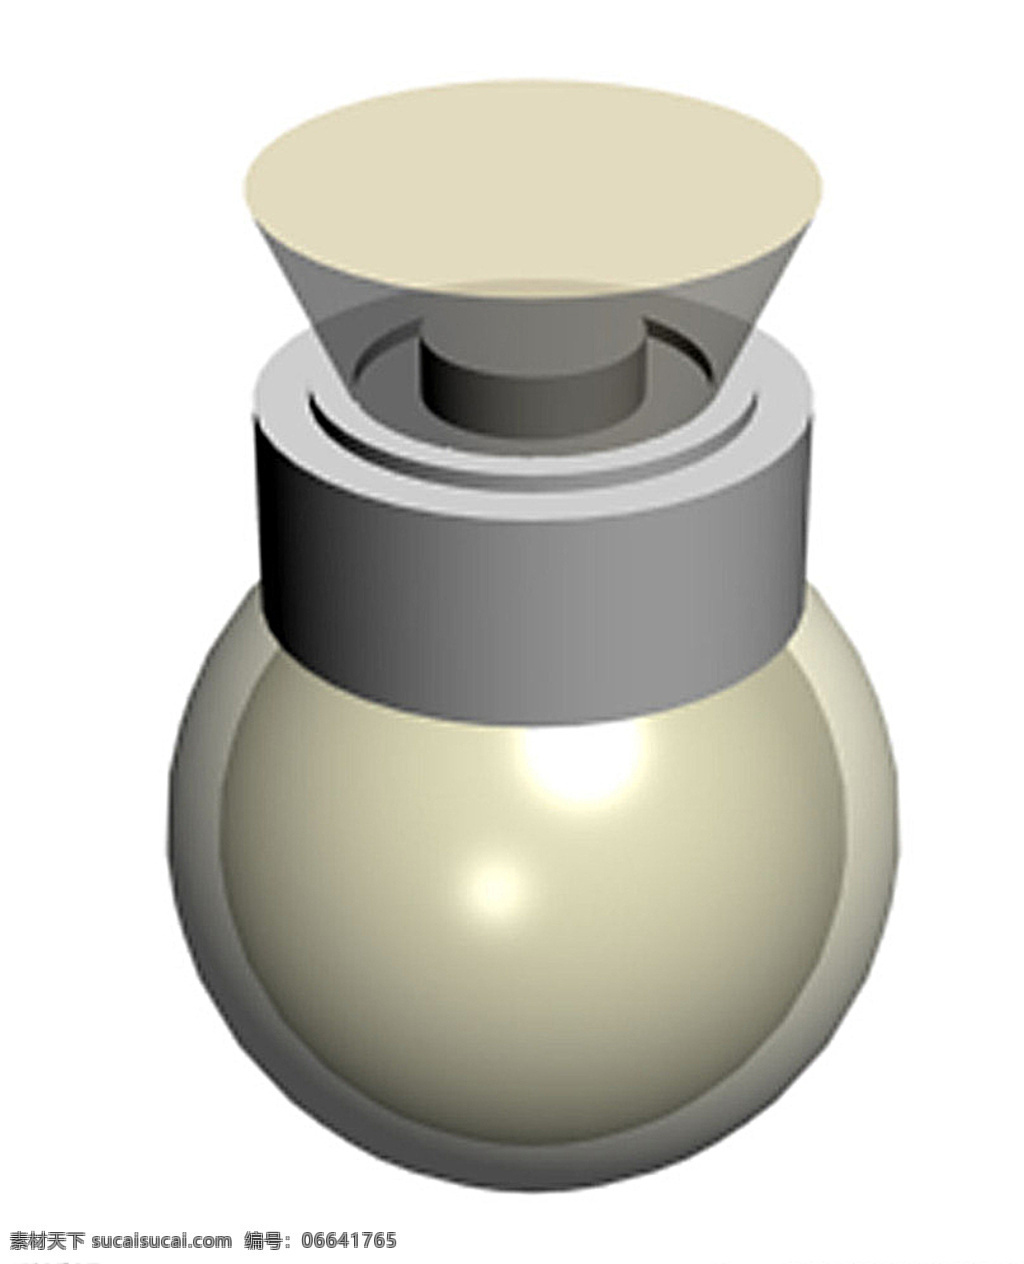 玻璃瓶子 圆球 矮肥 玻璃 透明 平盖 喷头 化妆品 药用品 液体瓶 圆瓶 效果图 曲线 模型 3d设计 其他模型 max 白色